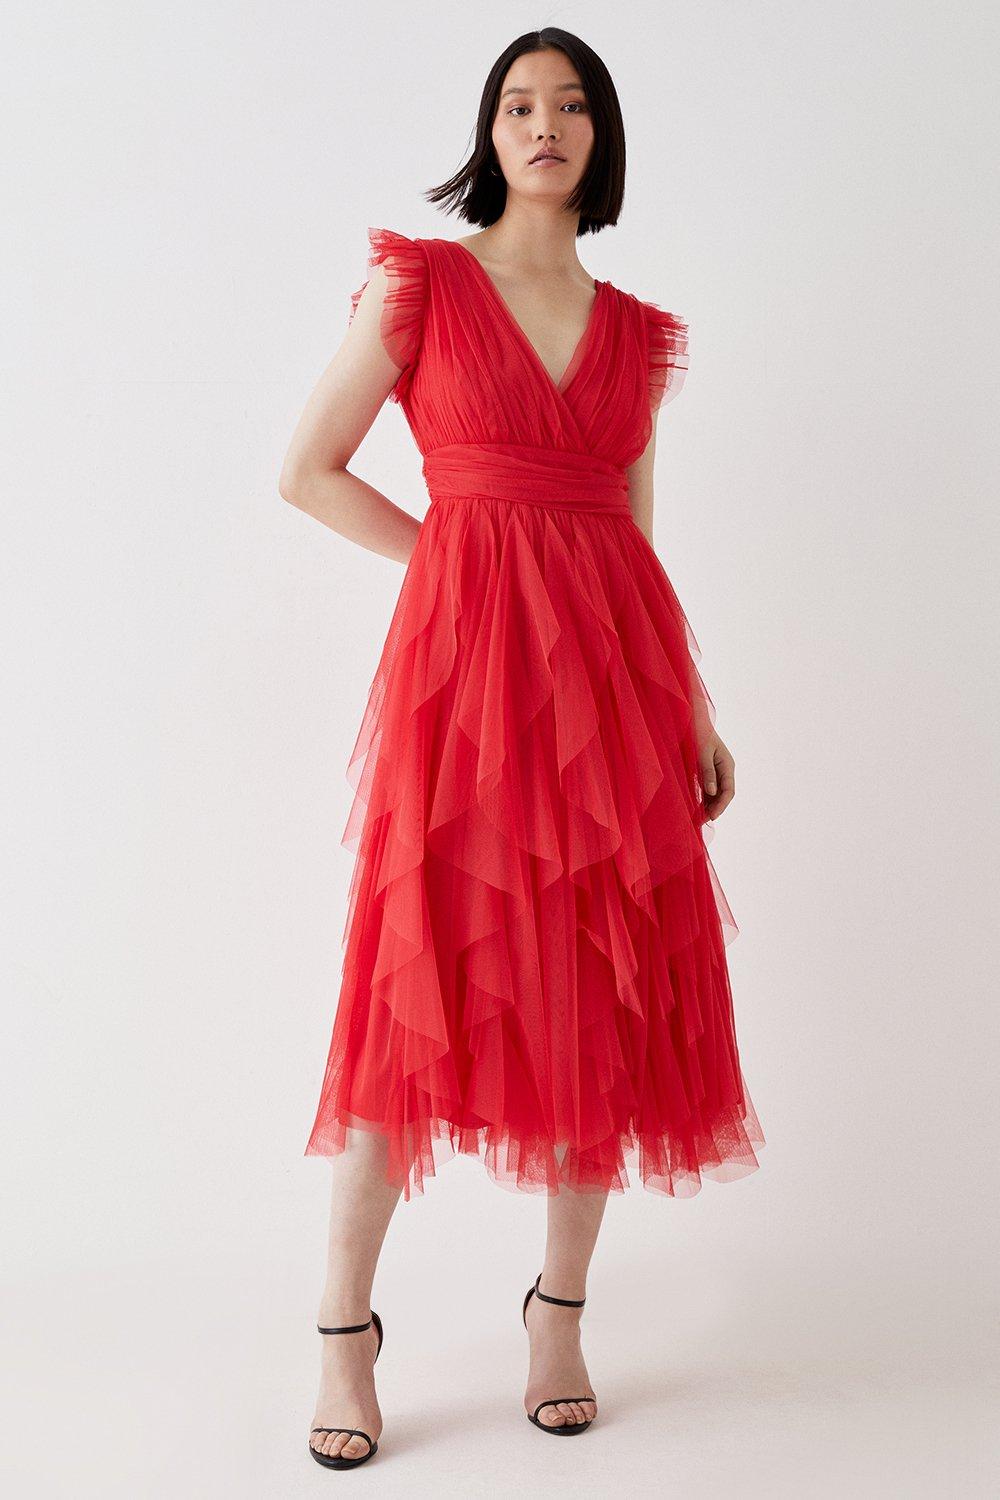 Ruffled Skirt Mesh Midi Dress - Red